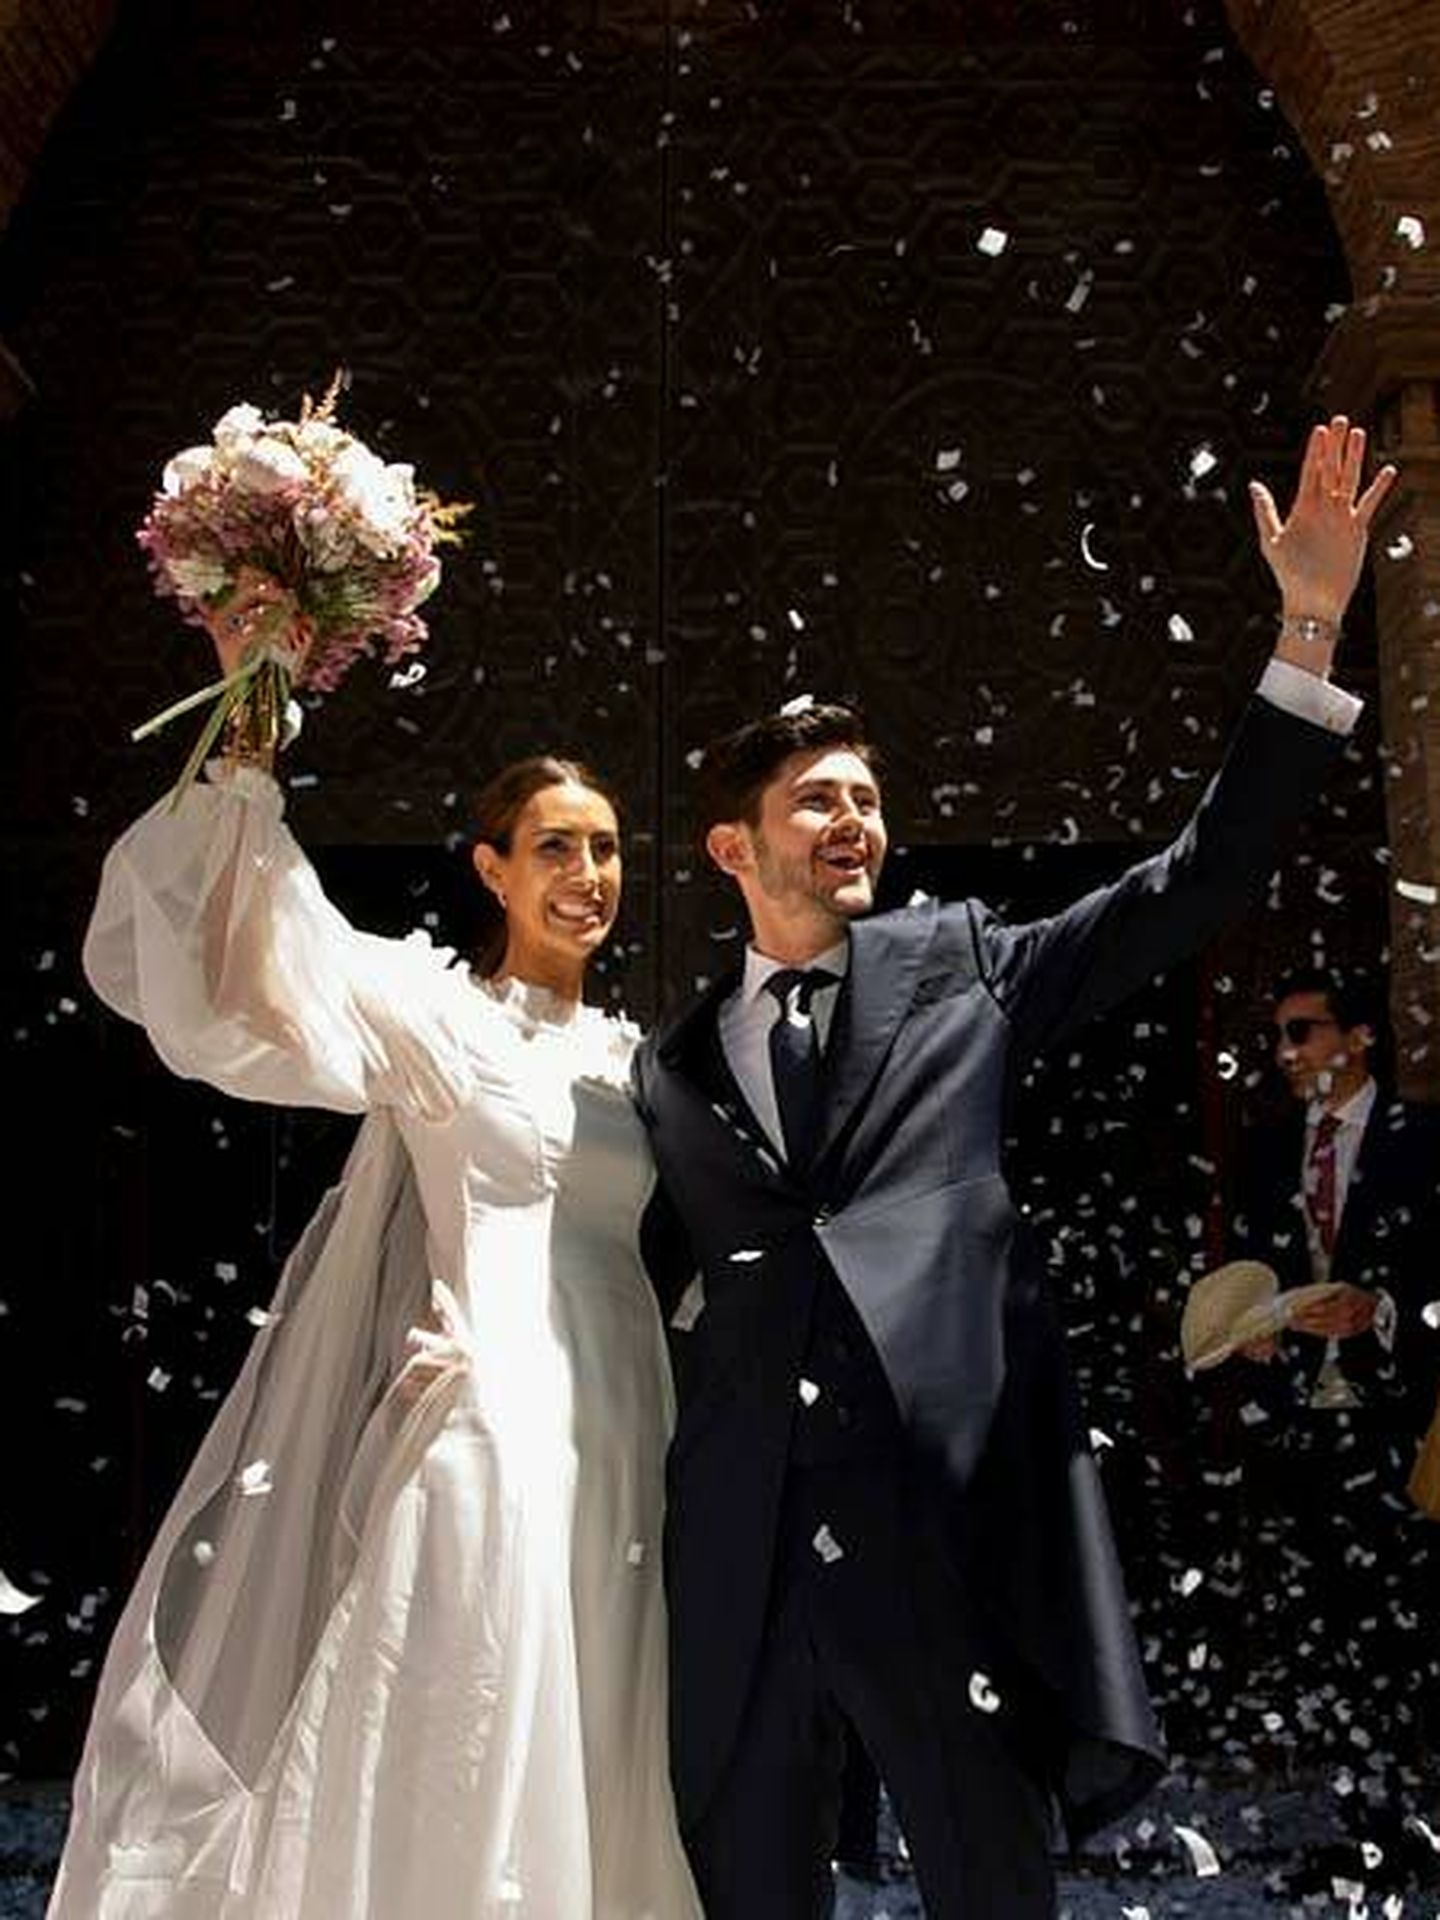 La boda de Marina en Zaragoza. (Click 10)